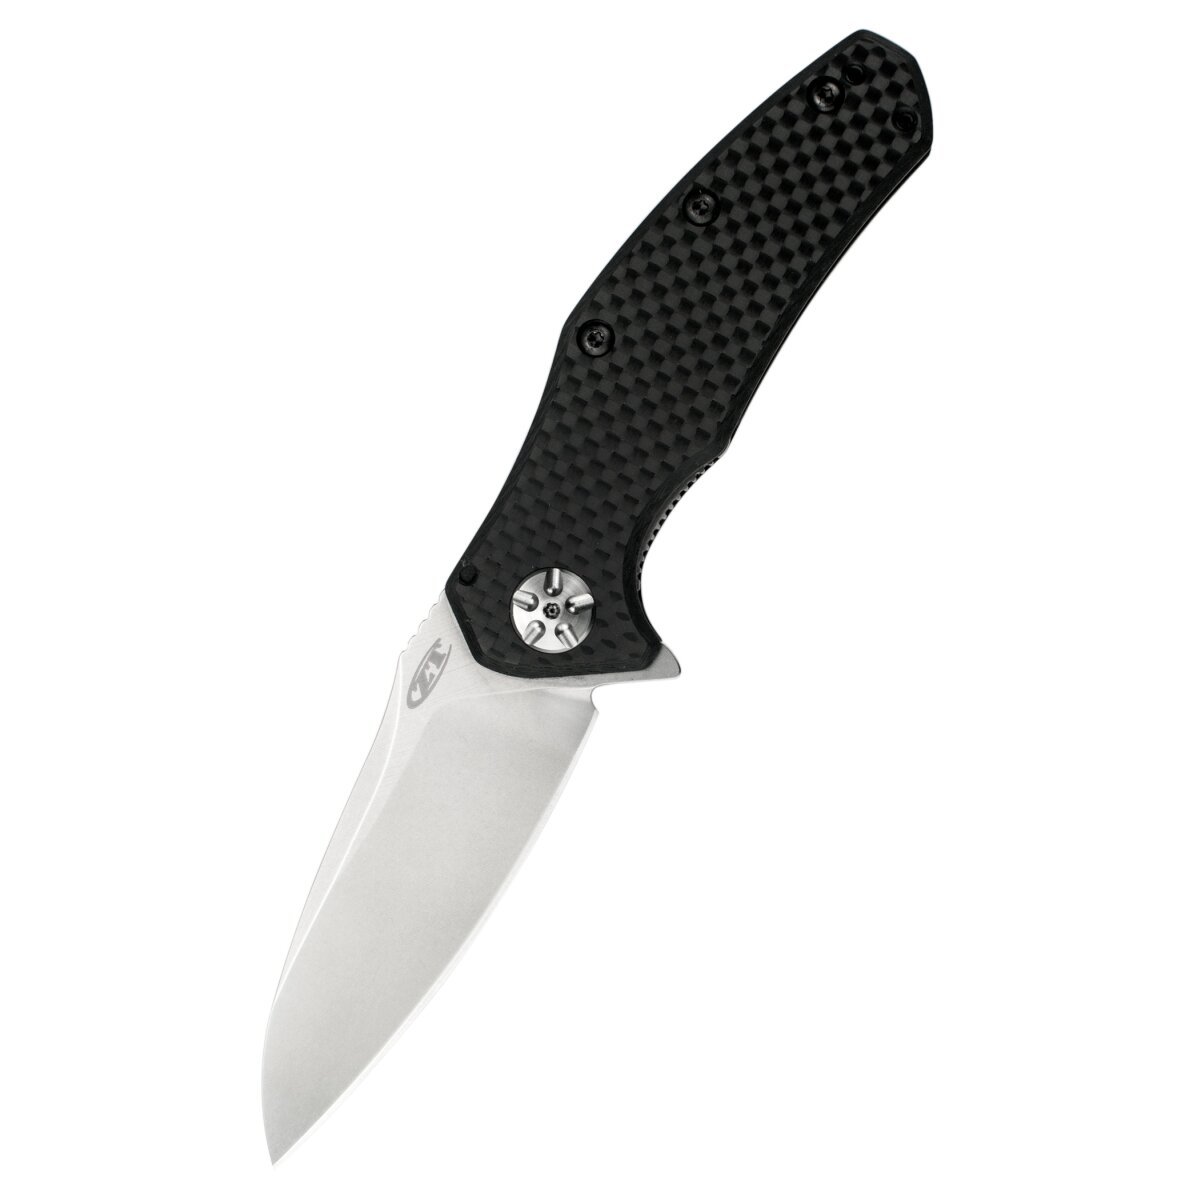 Pocket knife ZT 0770CF with carbon fiber handle